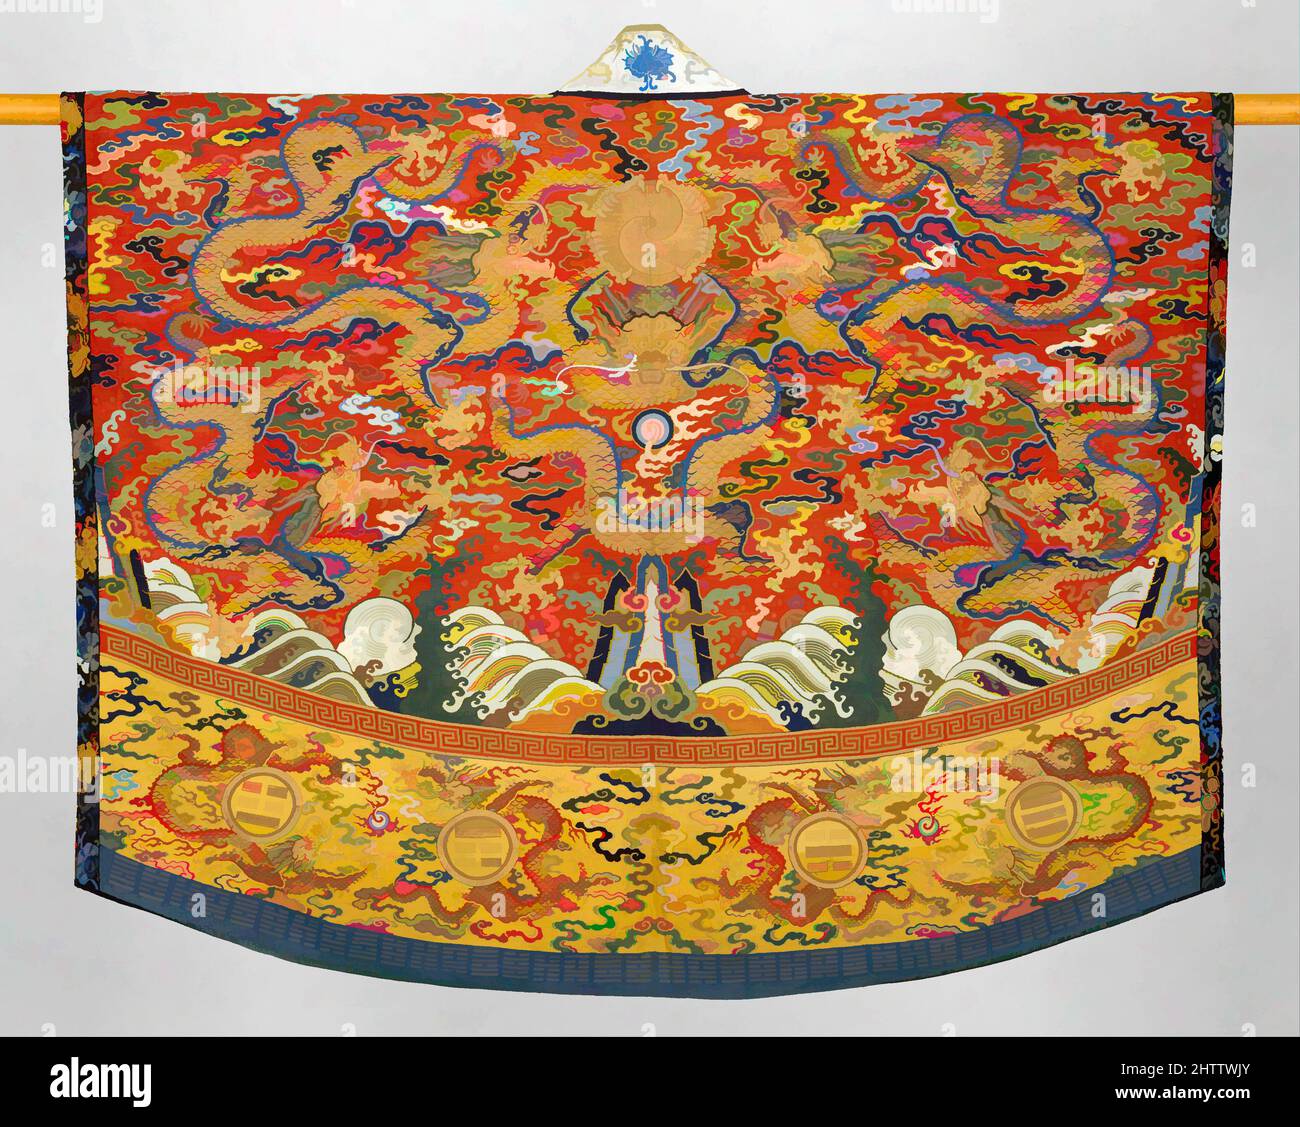 Arte ispirata da Daoist Robe (Jiang yi), dinastia Ming (1368–1644), 17th secolo, Cina, seta e filo metallico arazzi tessitura (kesi), totale: 54 3/4 x 65 3/4 pollici (139,1 x 167 cm), costumi-arazzi, il poncho-come jiang yi è indossato per cerimonie particolari da alto-ranking Daoist, opere classiche modernizzate da Artotop con un tuffo di modernità. Forme, colore e valore, impatto visivo accattivante sulle emozioni artistiche attraverso la libertà delle opere d'arte in modo contemporaneo. Un messaggio senza tempo che persegue una nuova direzione selvaggiamente creativa. Artisti che si rivolgono al supporto digitale e creano l'NFT Artotop Foto Stock